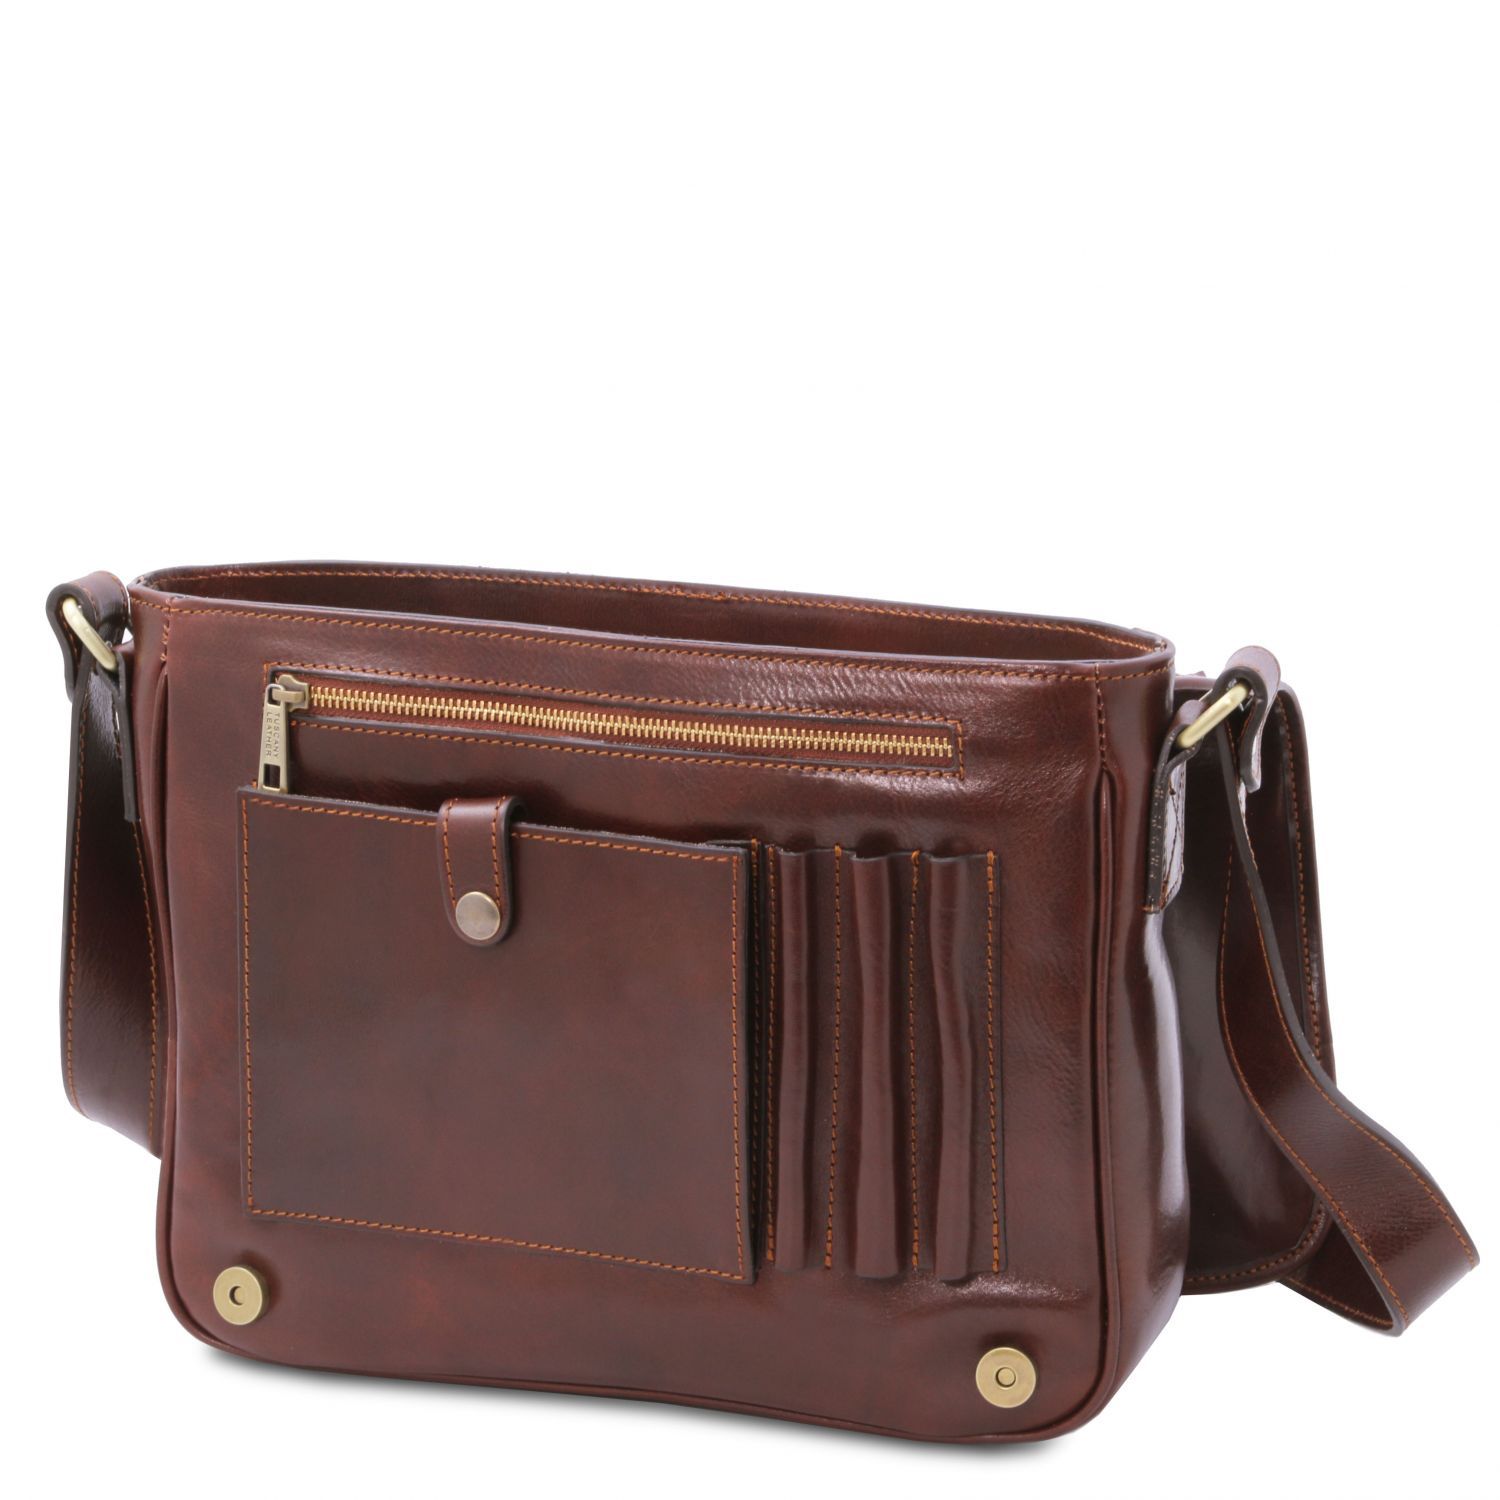 What Size Is A Medium Handbag | semashow.com